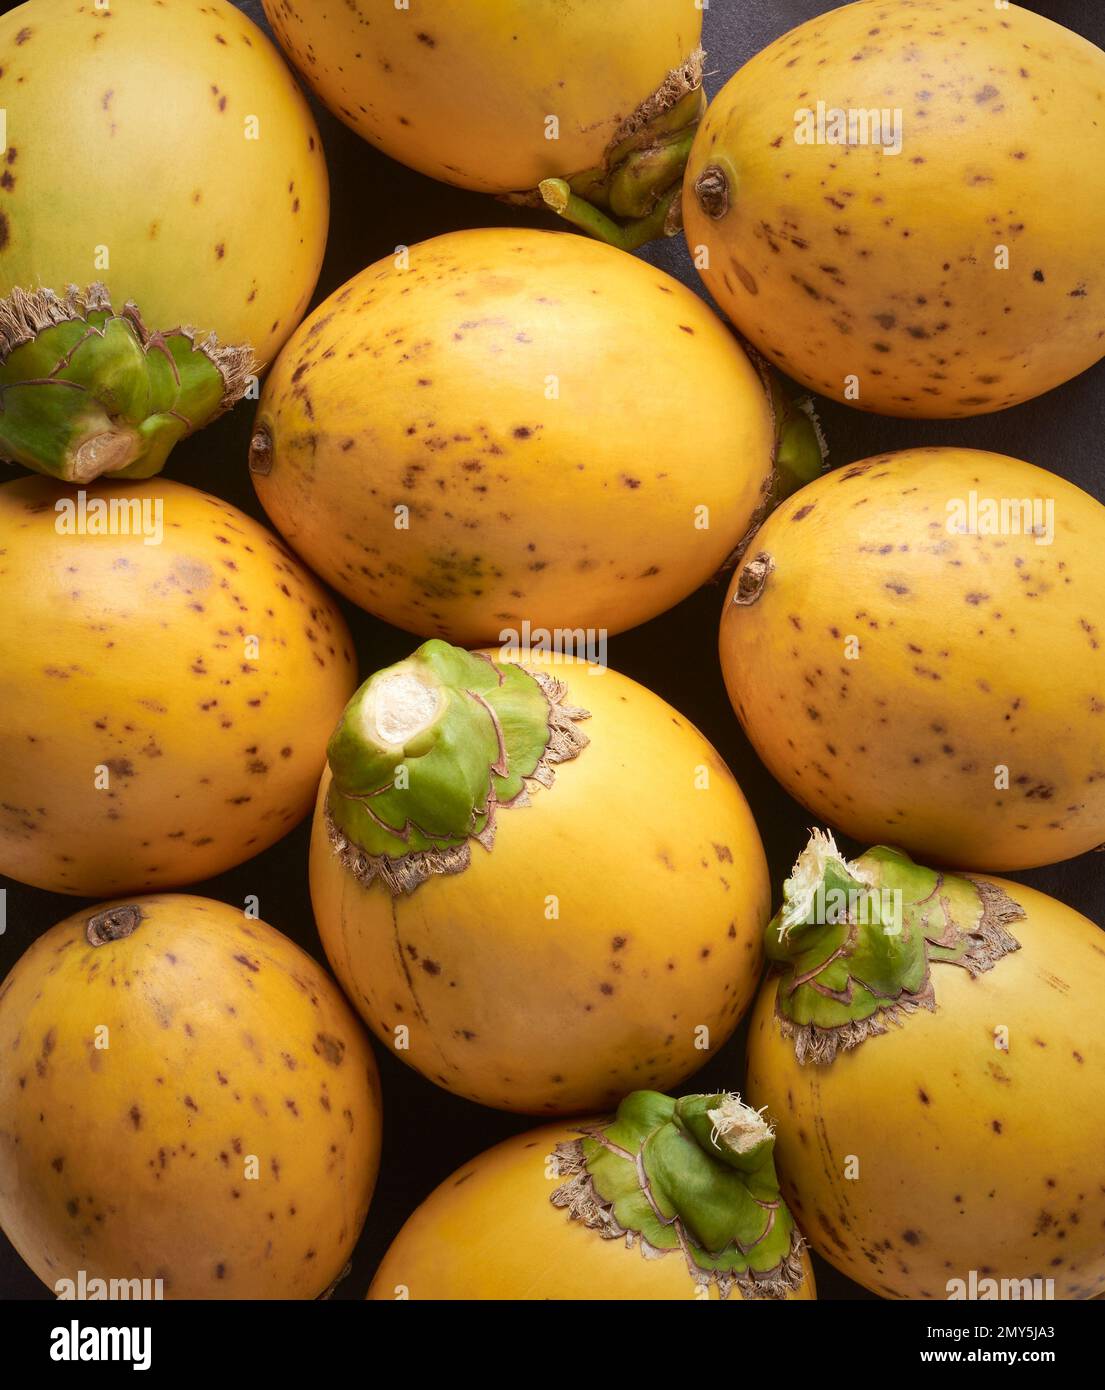 Areka-Nüsse aus frischen und gelben Hülsen, Früchte der Areka-Palme, Areka-Nuss- oder Betelpalme, Nahaufnahme tropischer und kommerziell wichtiger Früchte Stockfoto